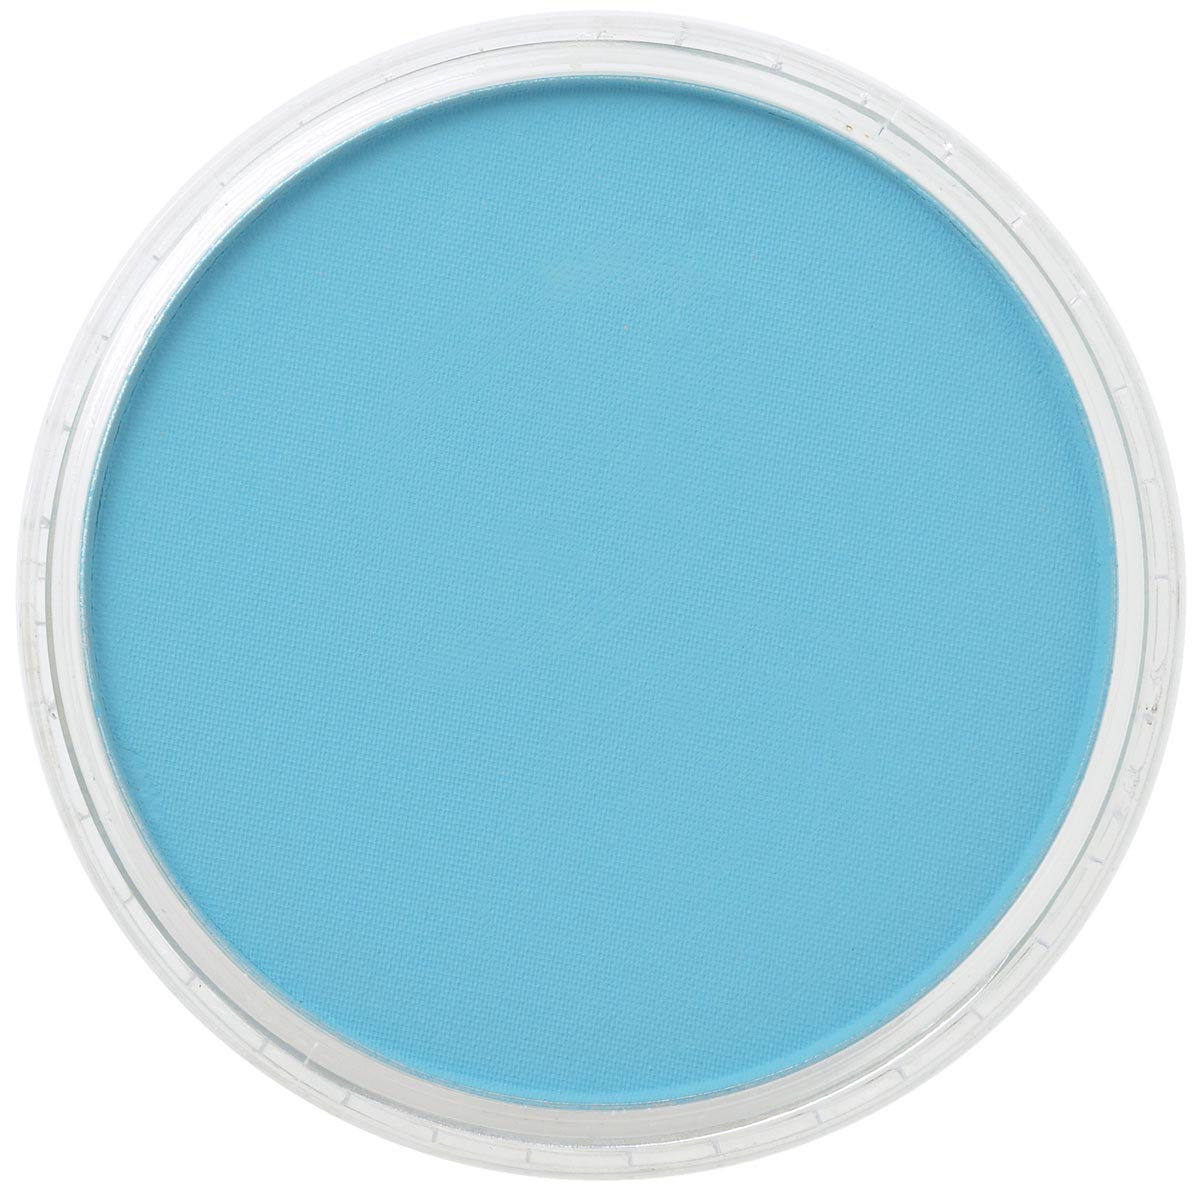 Pan Pastel Turquoise 580.5